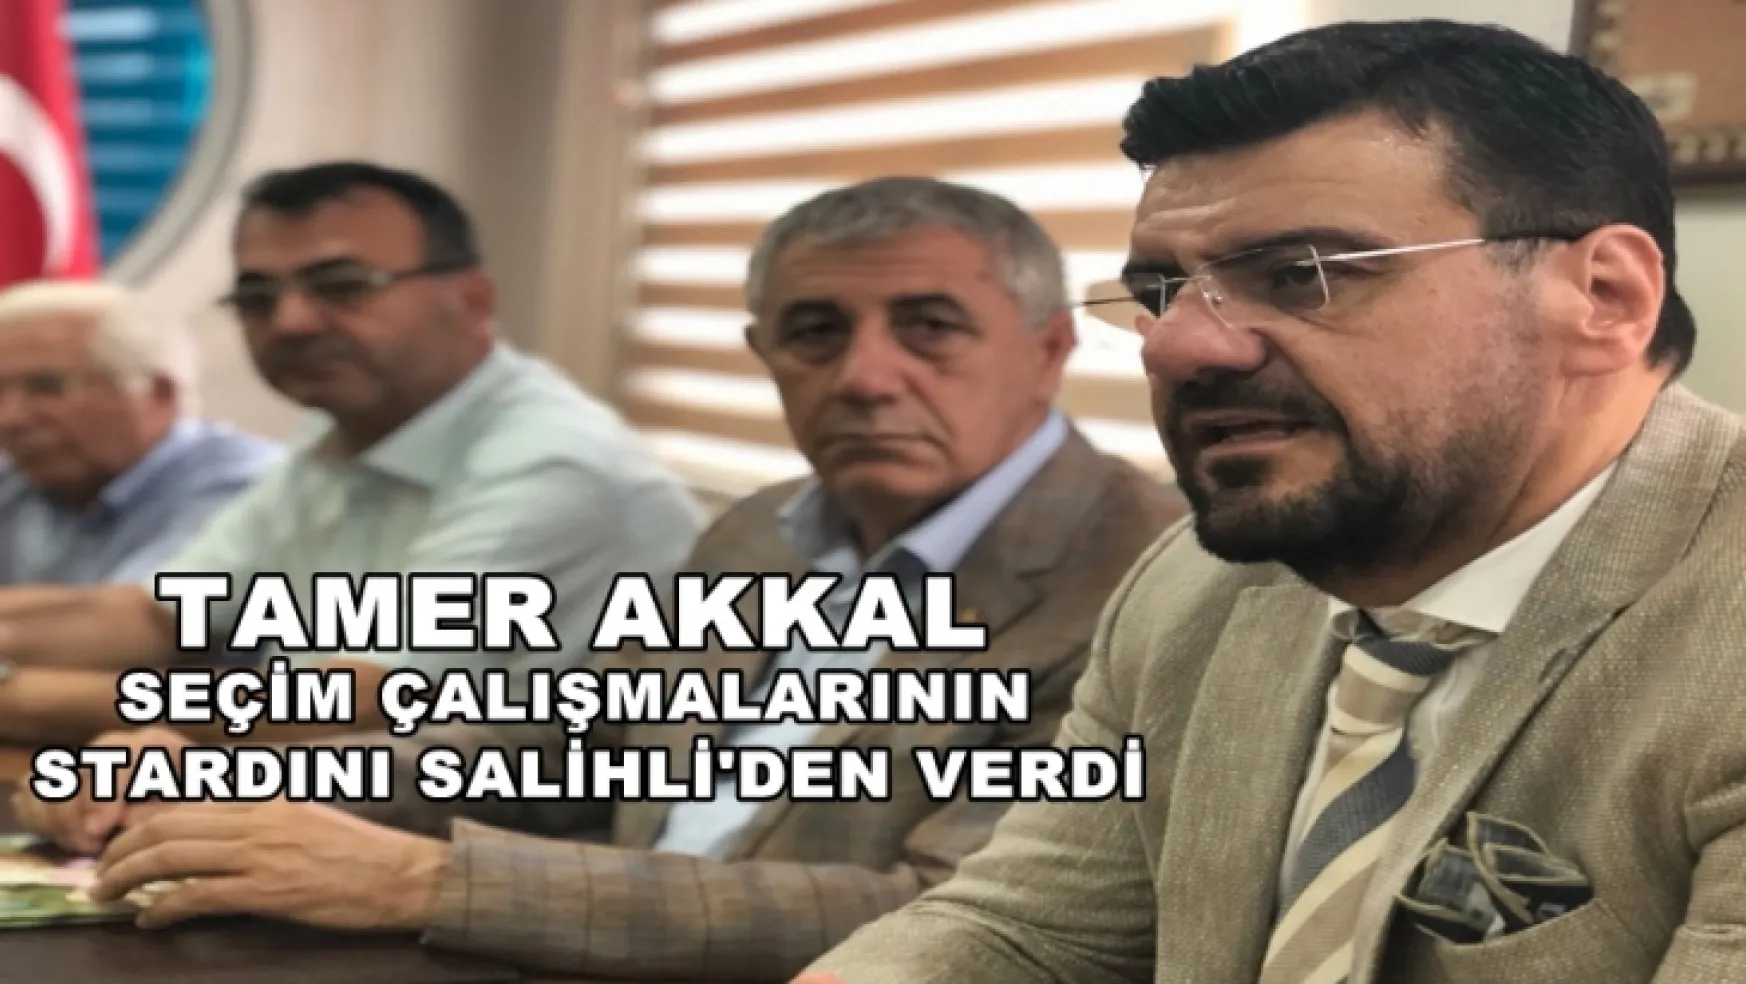 Tamer Akkal,'Seçim çalışmaları startını verdi'